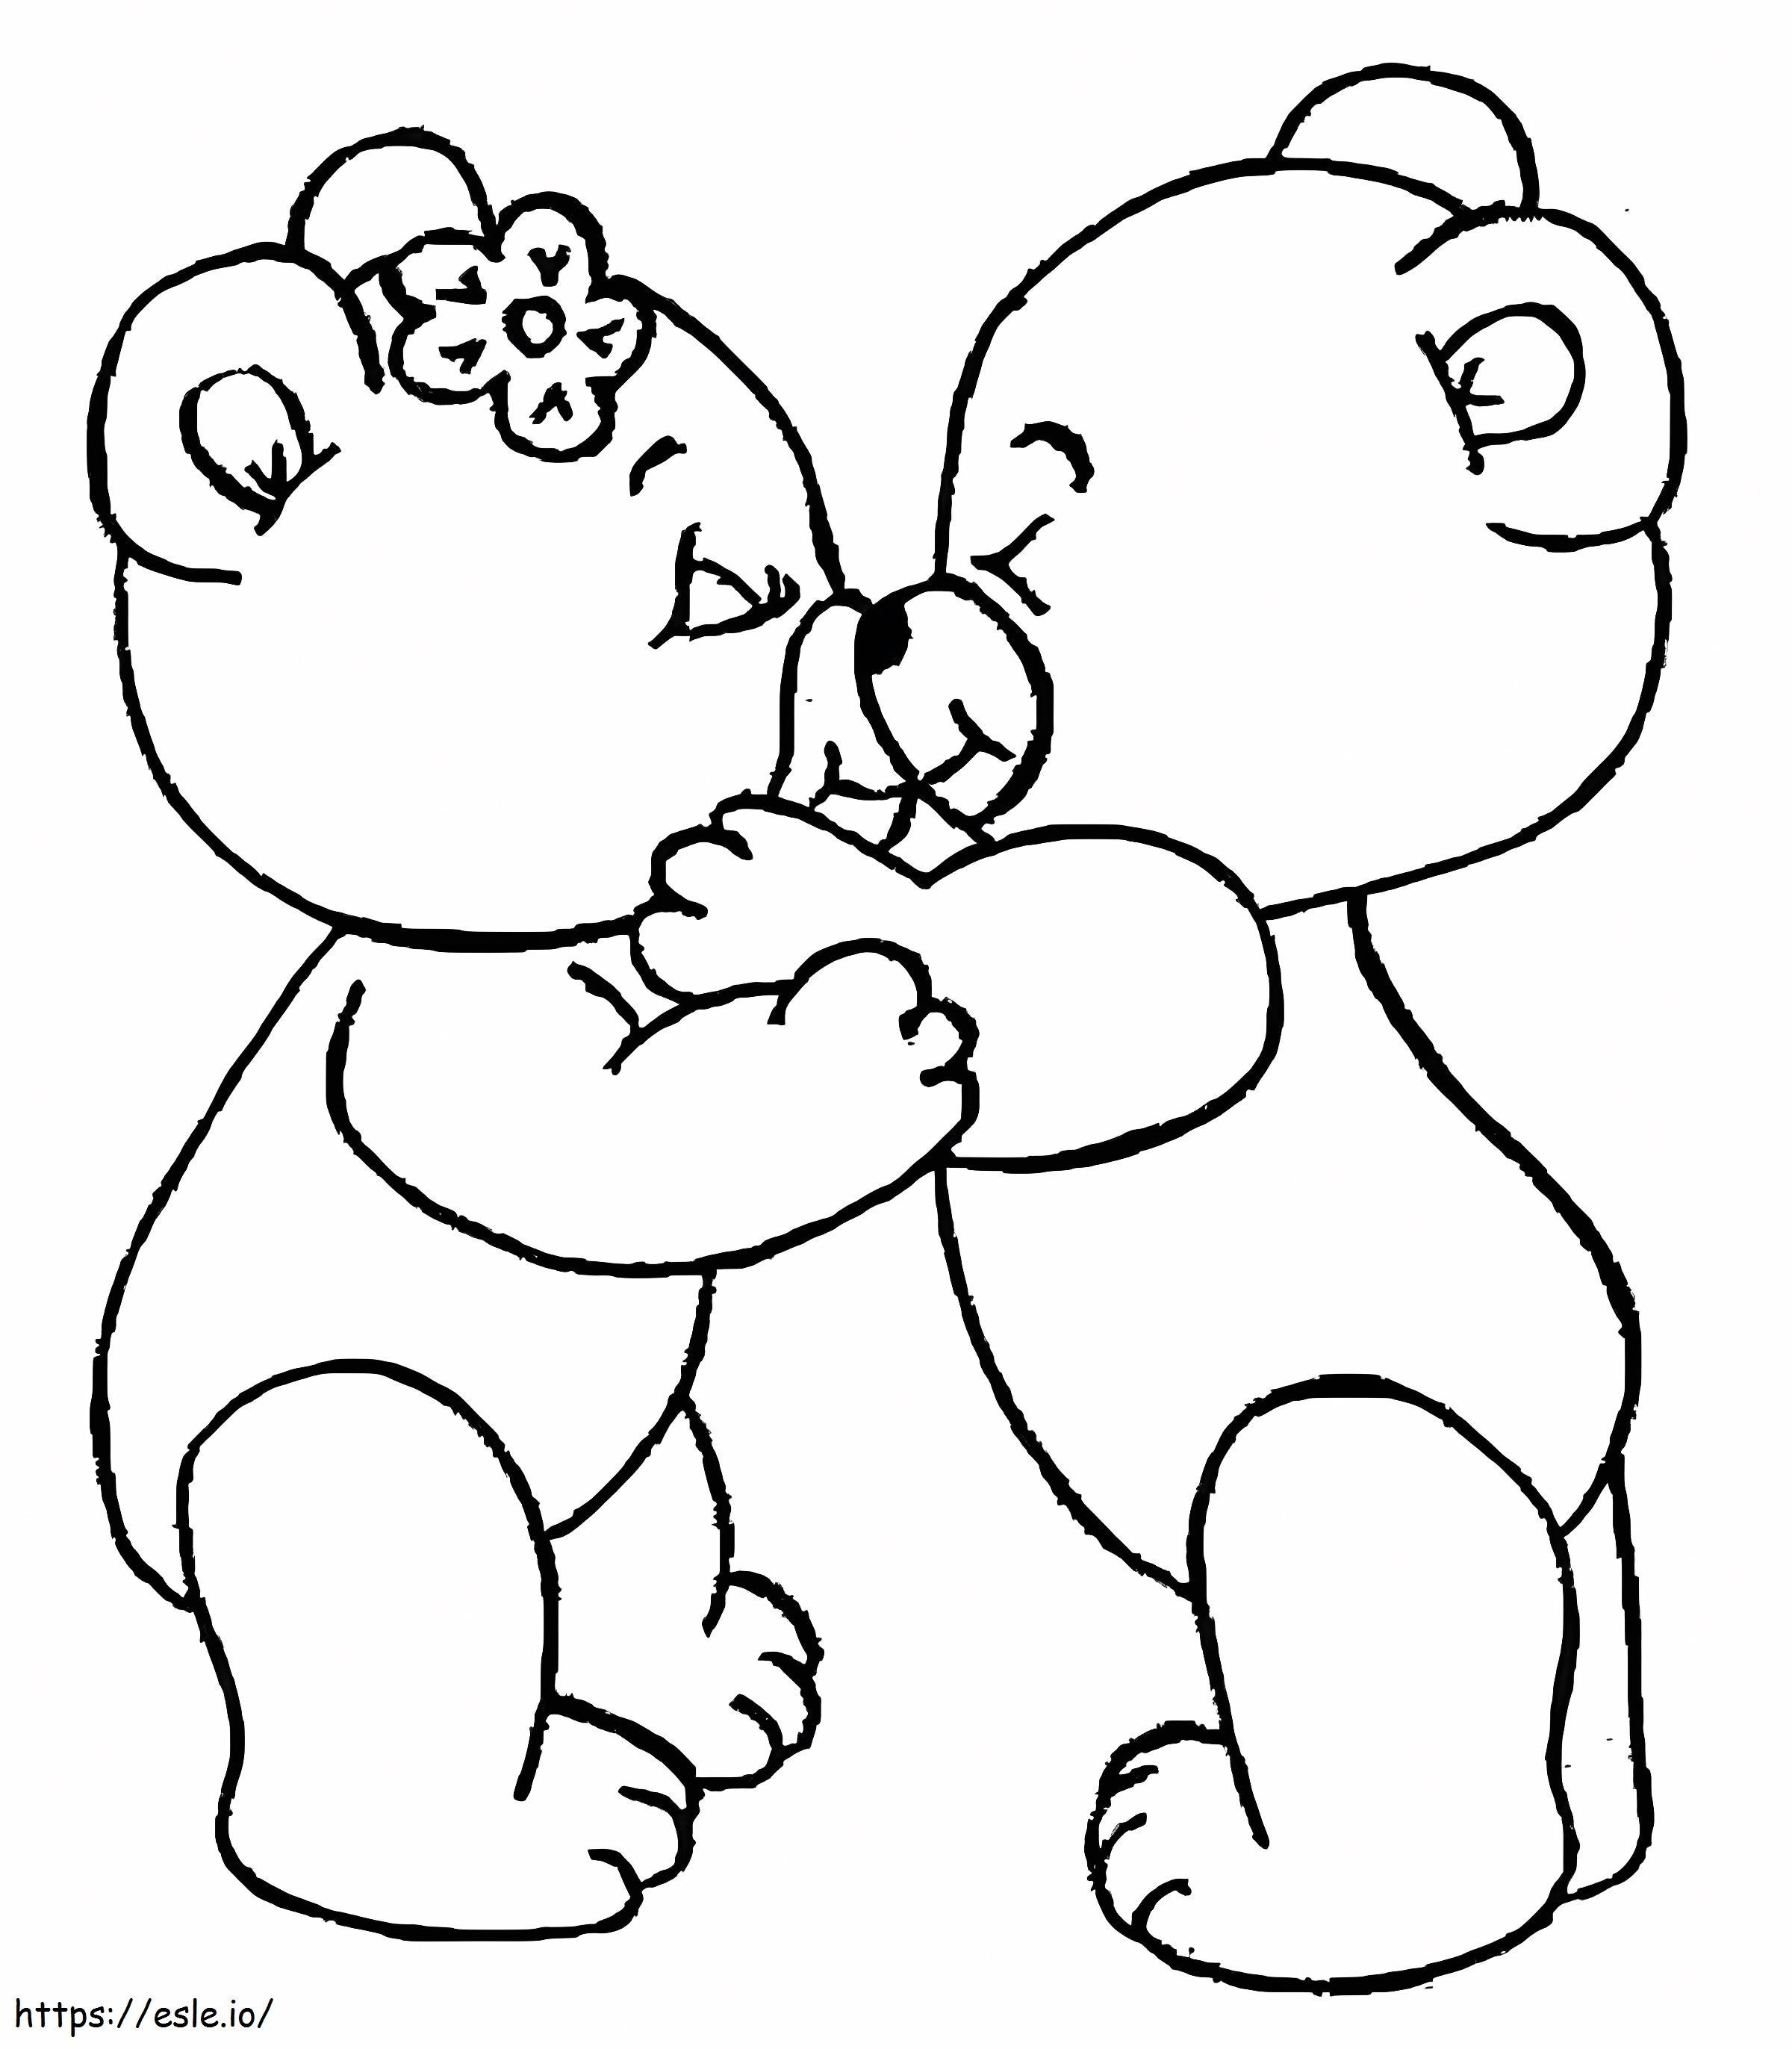 Ich liebe es, Bären zu küssen ausmalbilder